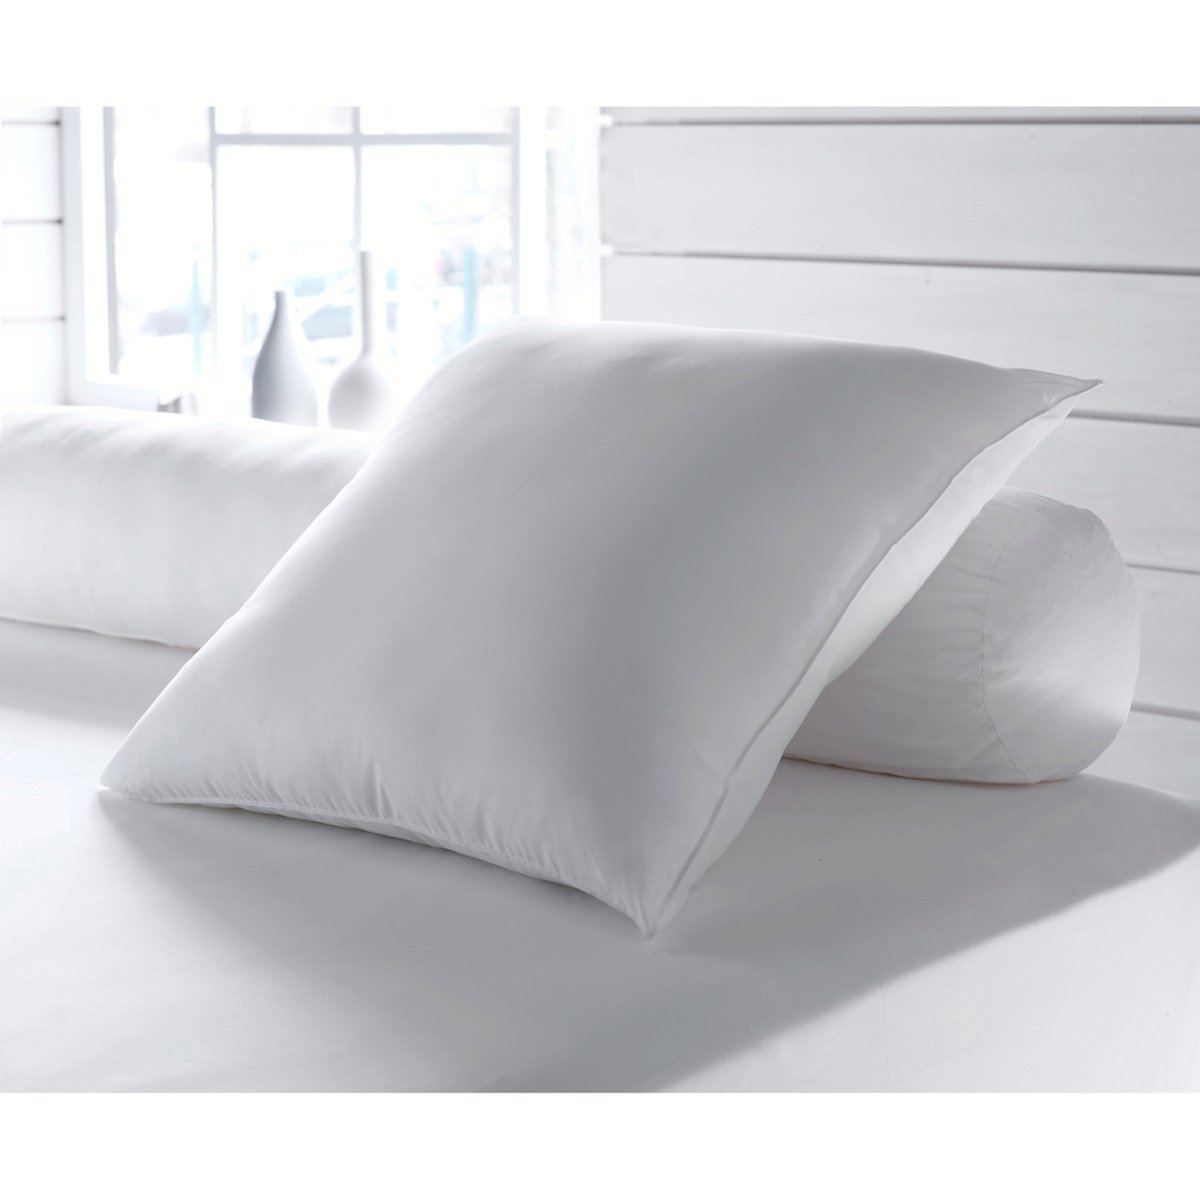 Одеяло La Redoute Экологичное с обработкой против клещей Proneem специально для летнего использования 260 x 240 см белый, размер 260 x 240 см - фото 2